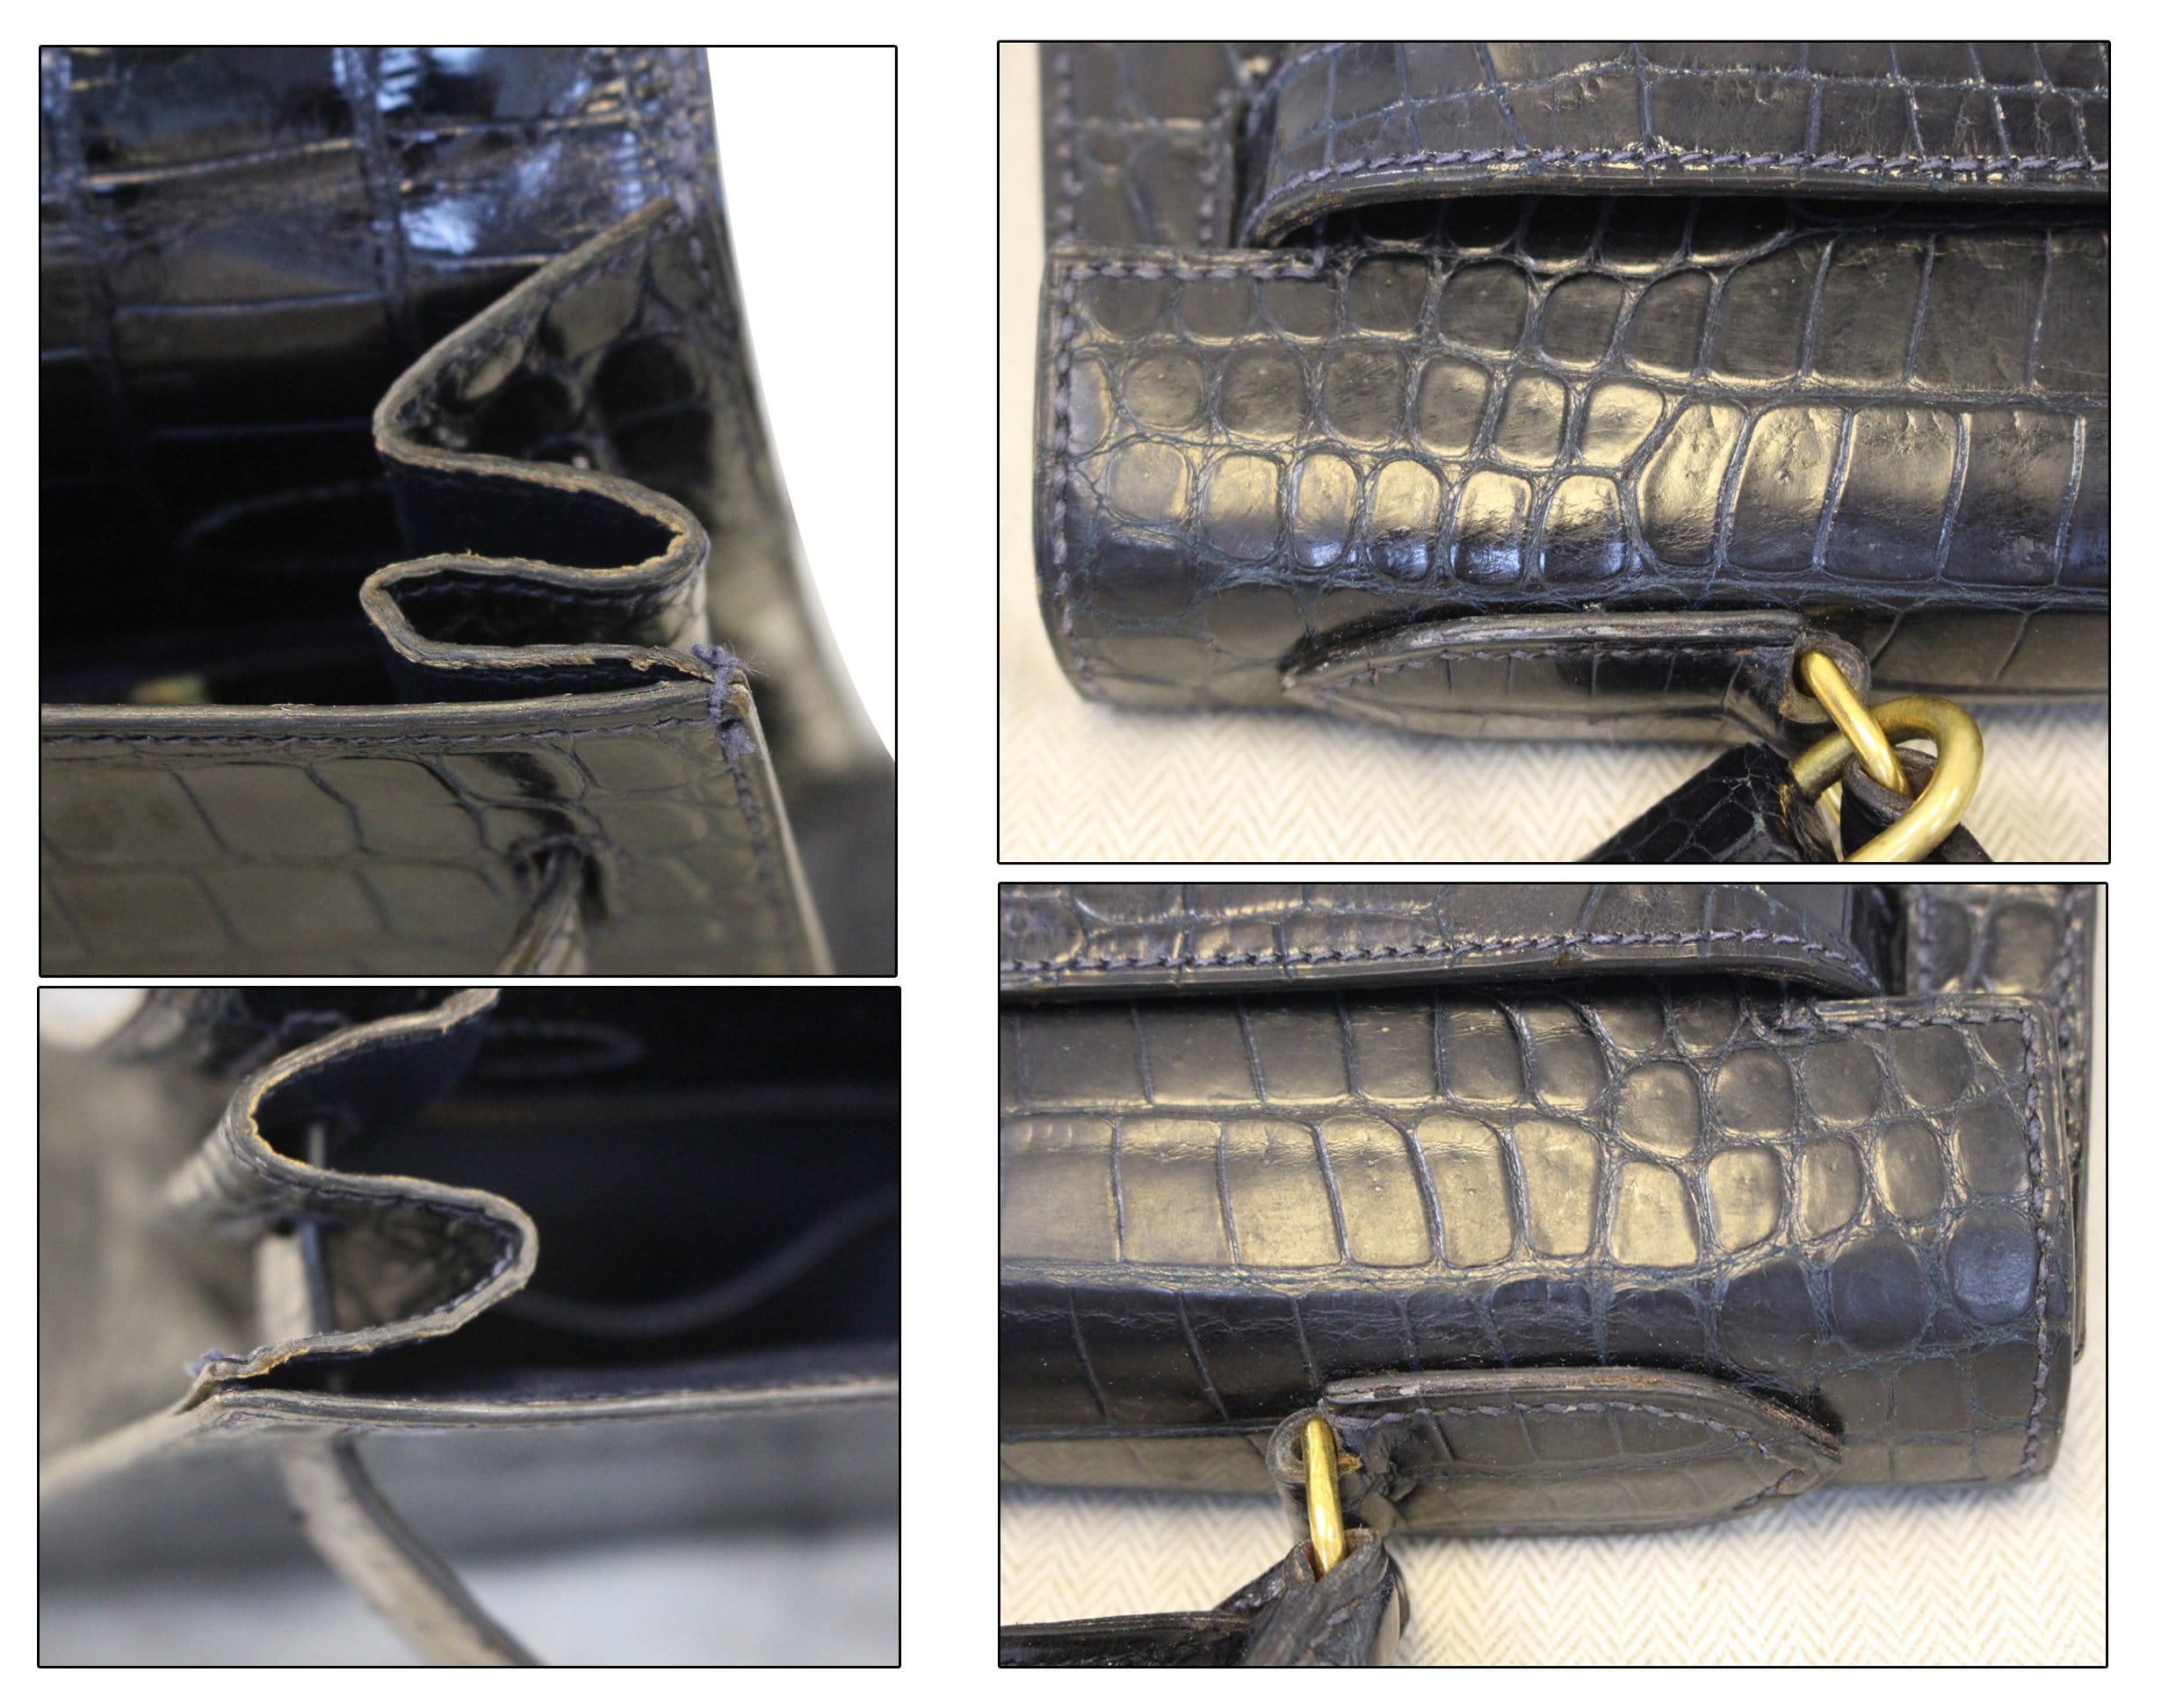 Hermès Vintage Niloticus Crocodile Kelly Sellier 32 - Black Handle Bags,  Handbags - HER452170